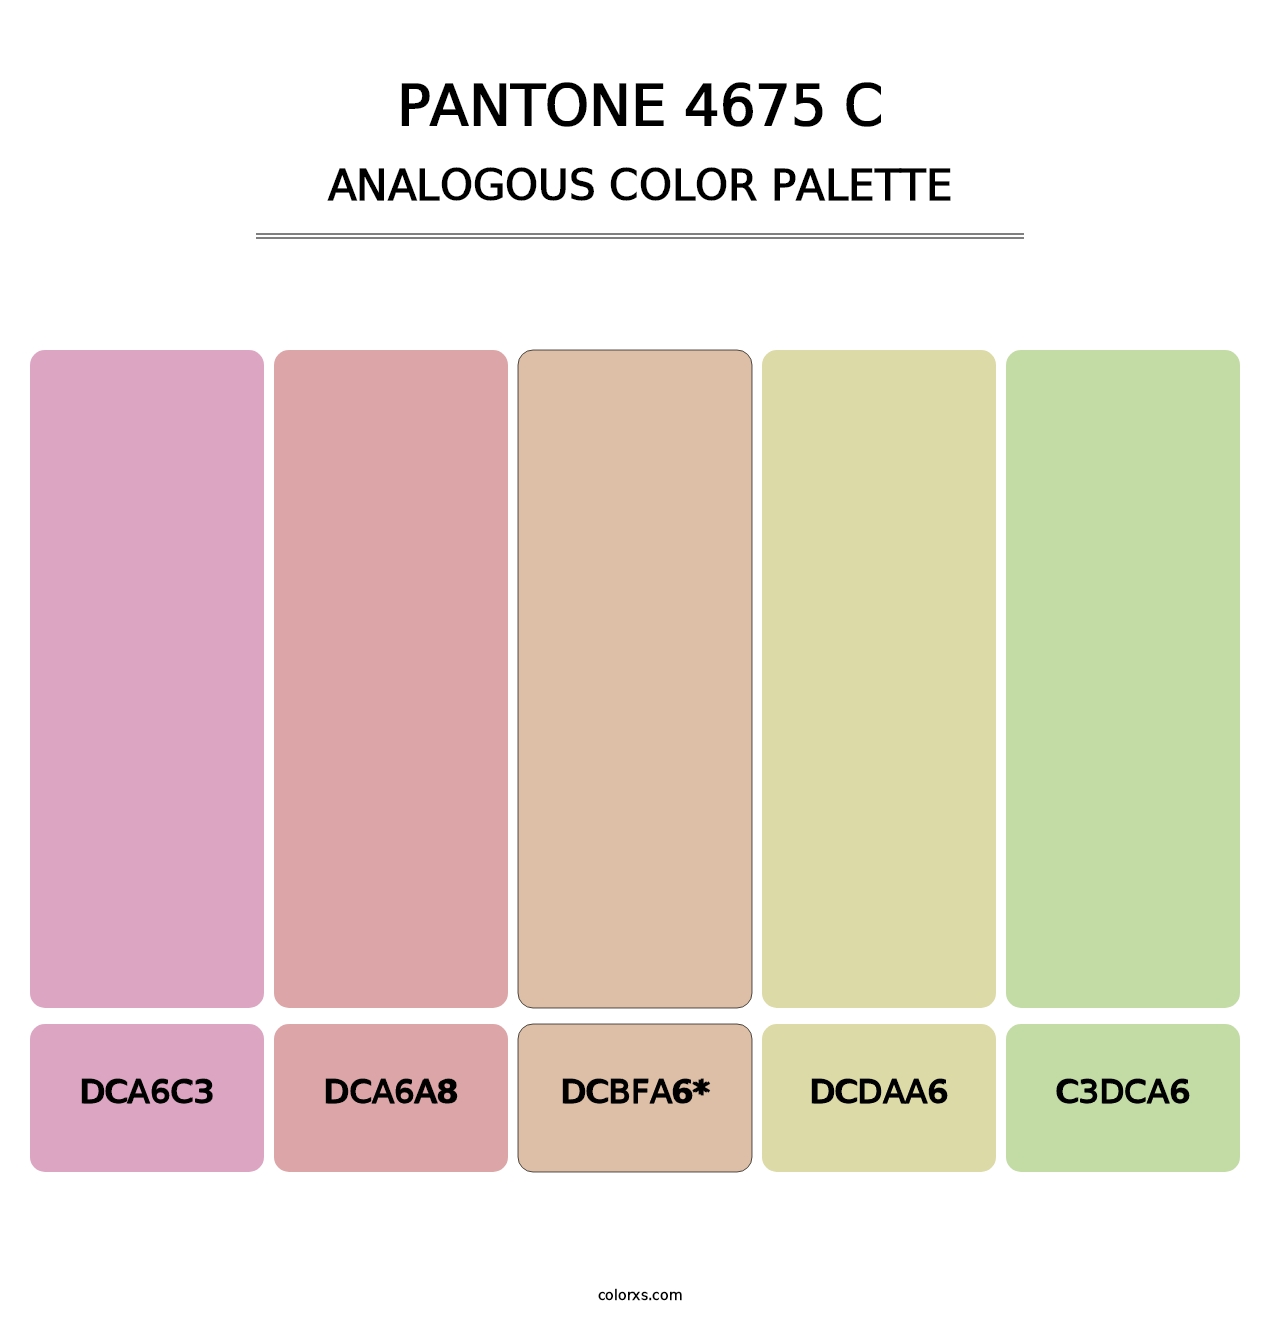 PANTONE 4675 C - Analogous Color Palette